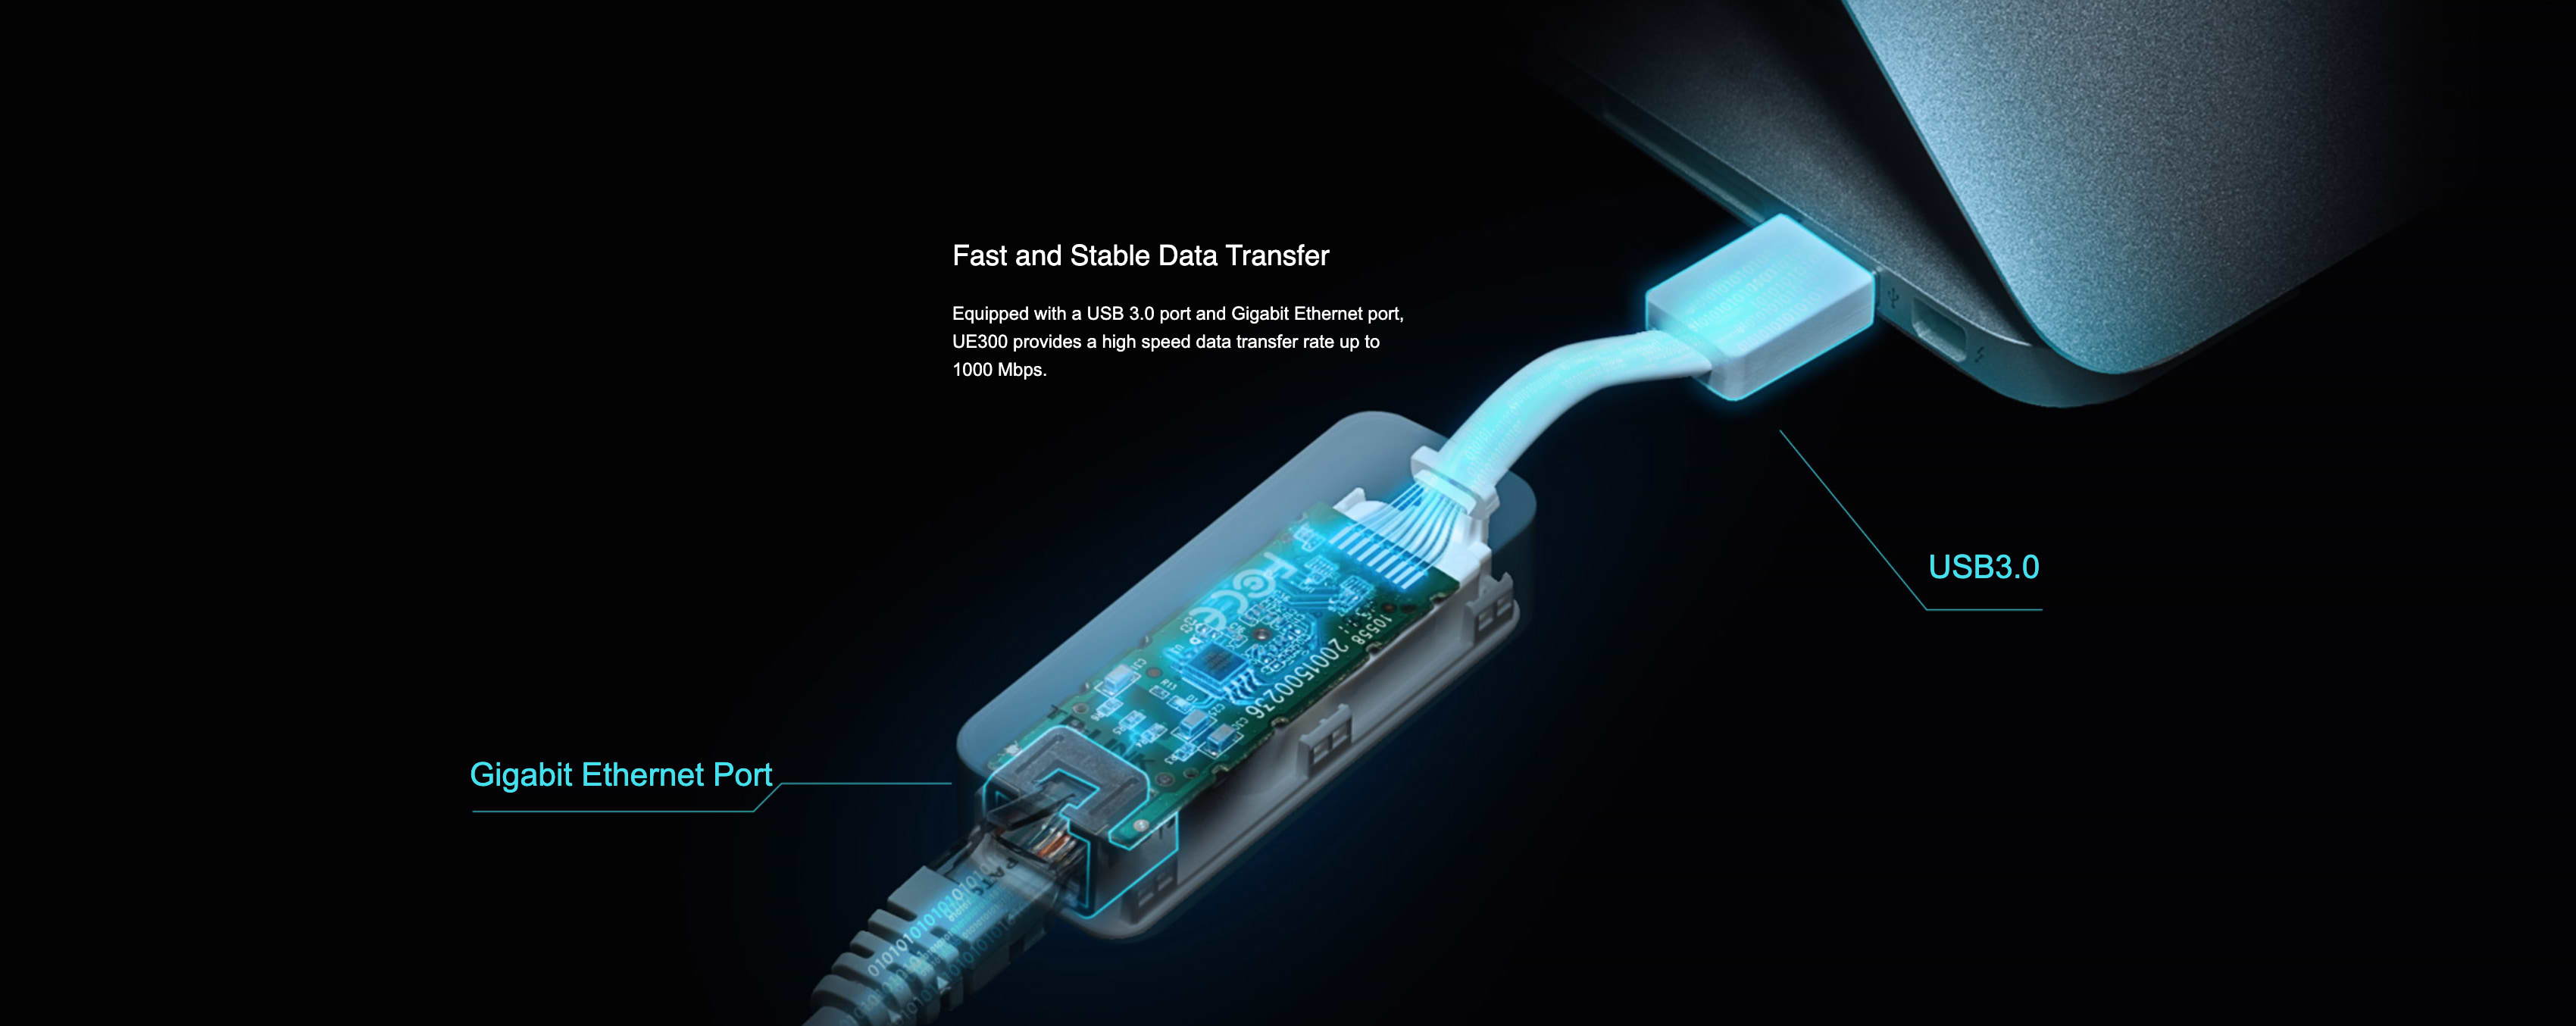 ‏כרטיס רשת TP-Link UE300 USB 3.0 to Gigabit Ethernet Network - צבע לבן שלוש שנות אחריות ע"י היבואן הרשמי